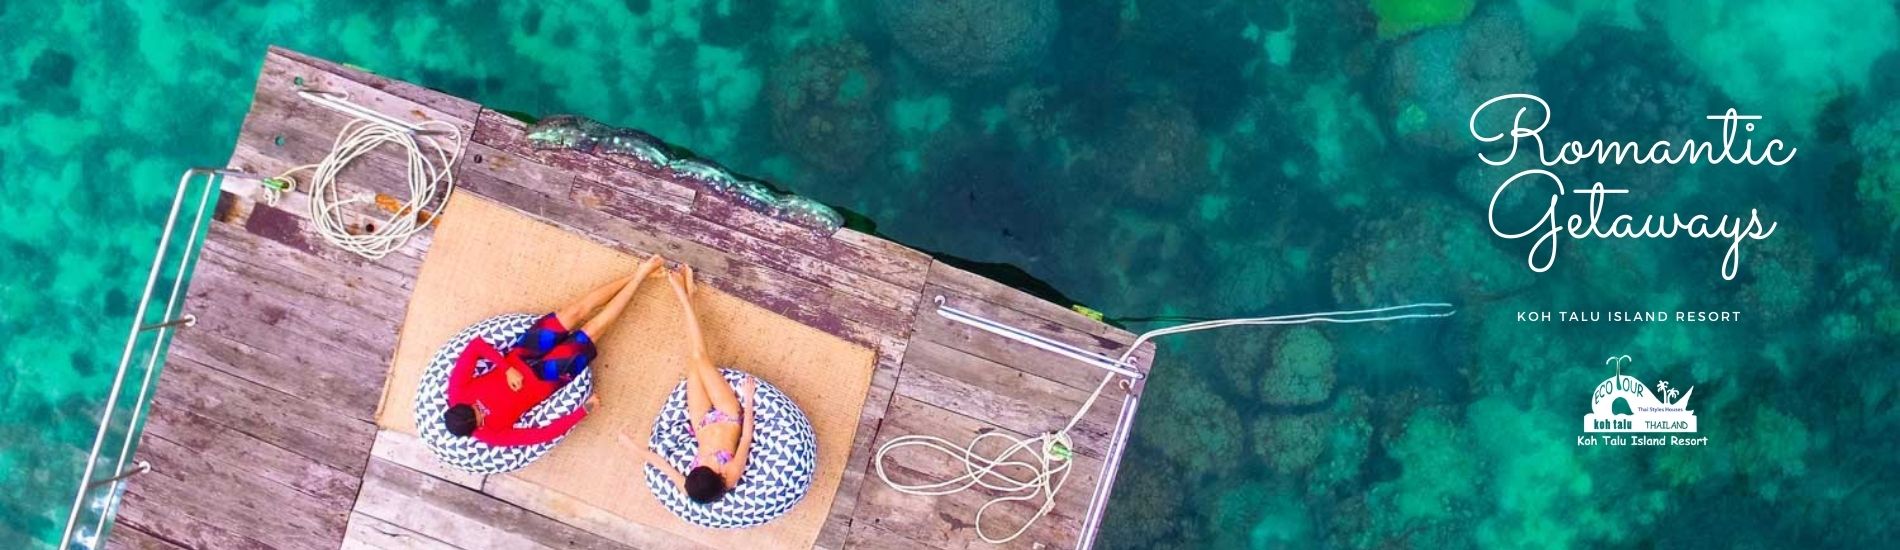 Romantic Getaways for Nature Lovers at Koh Talu Island Resort